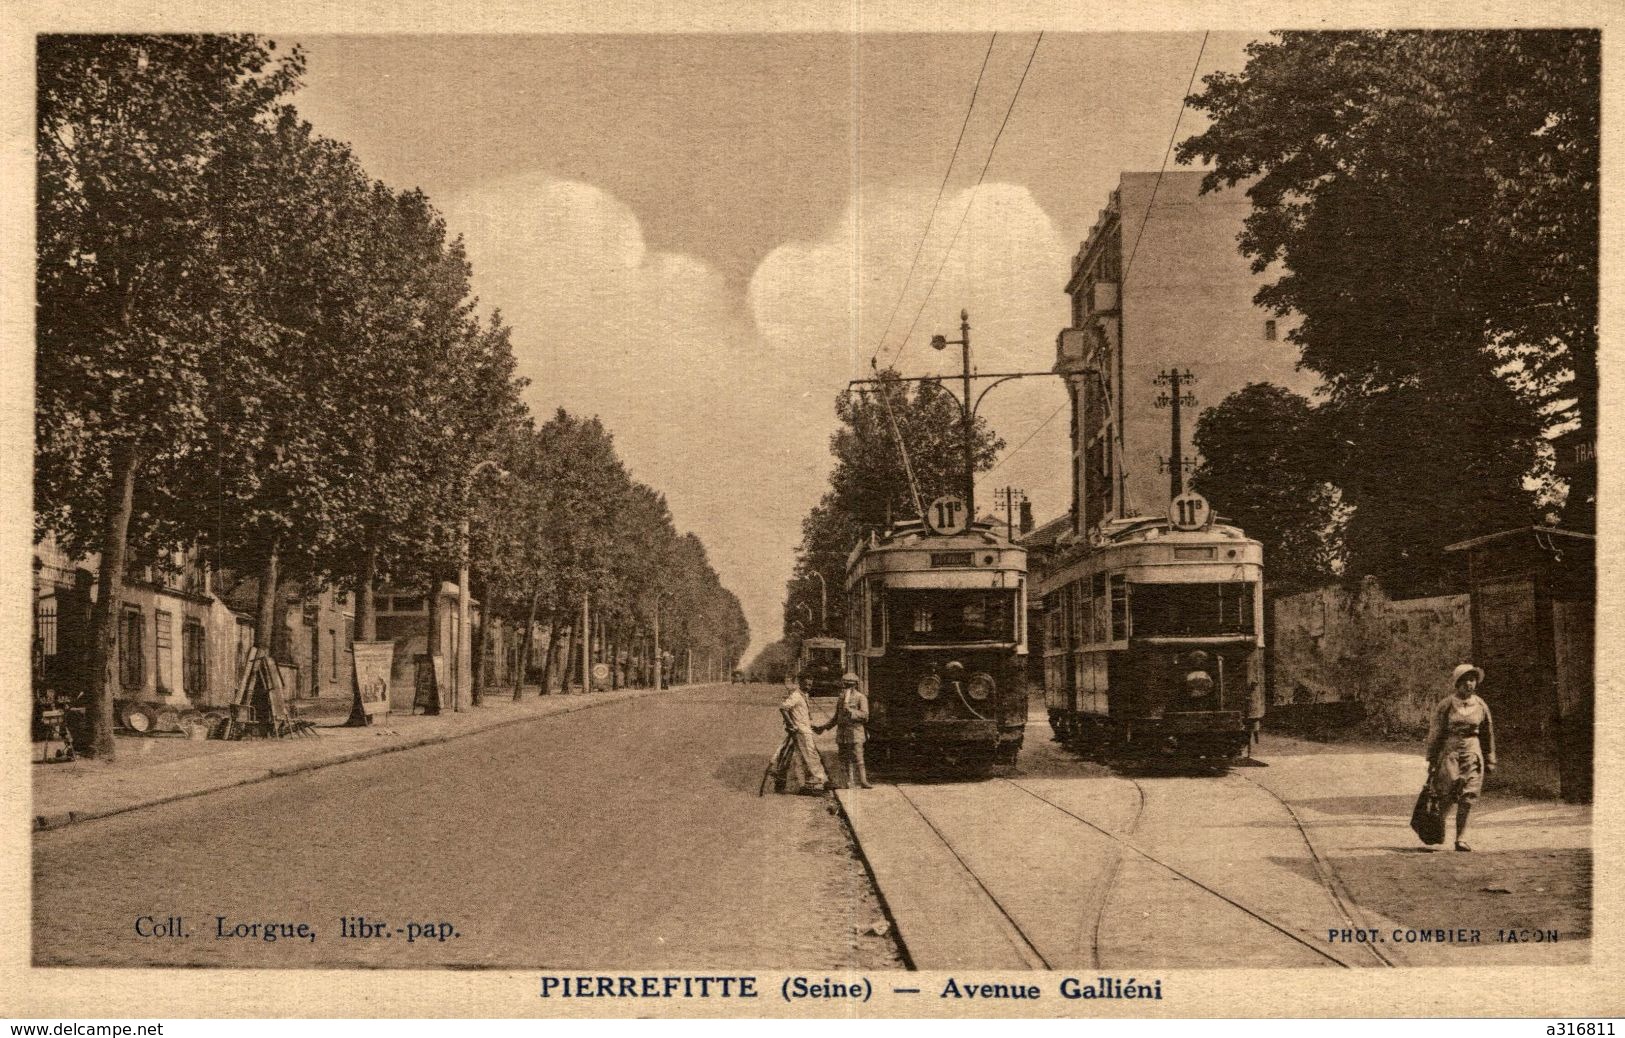 PIERREFITTE AVENUE GALLIENI - Pierrefitte Sur Seine